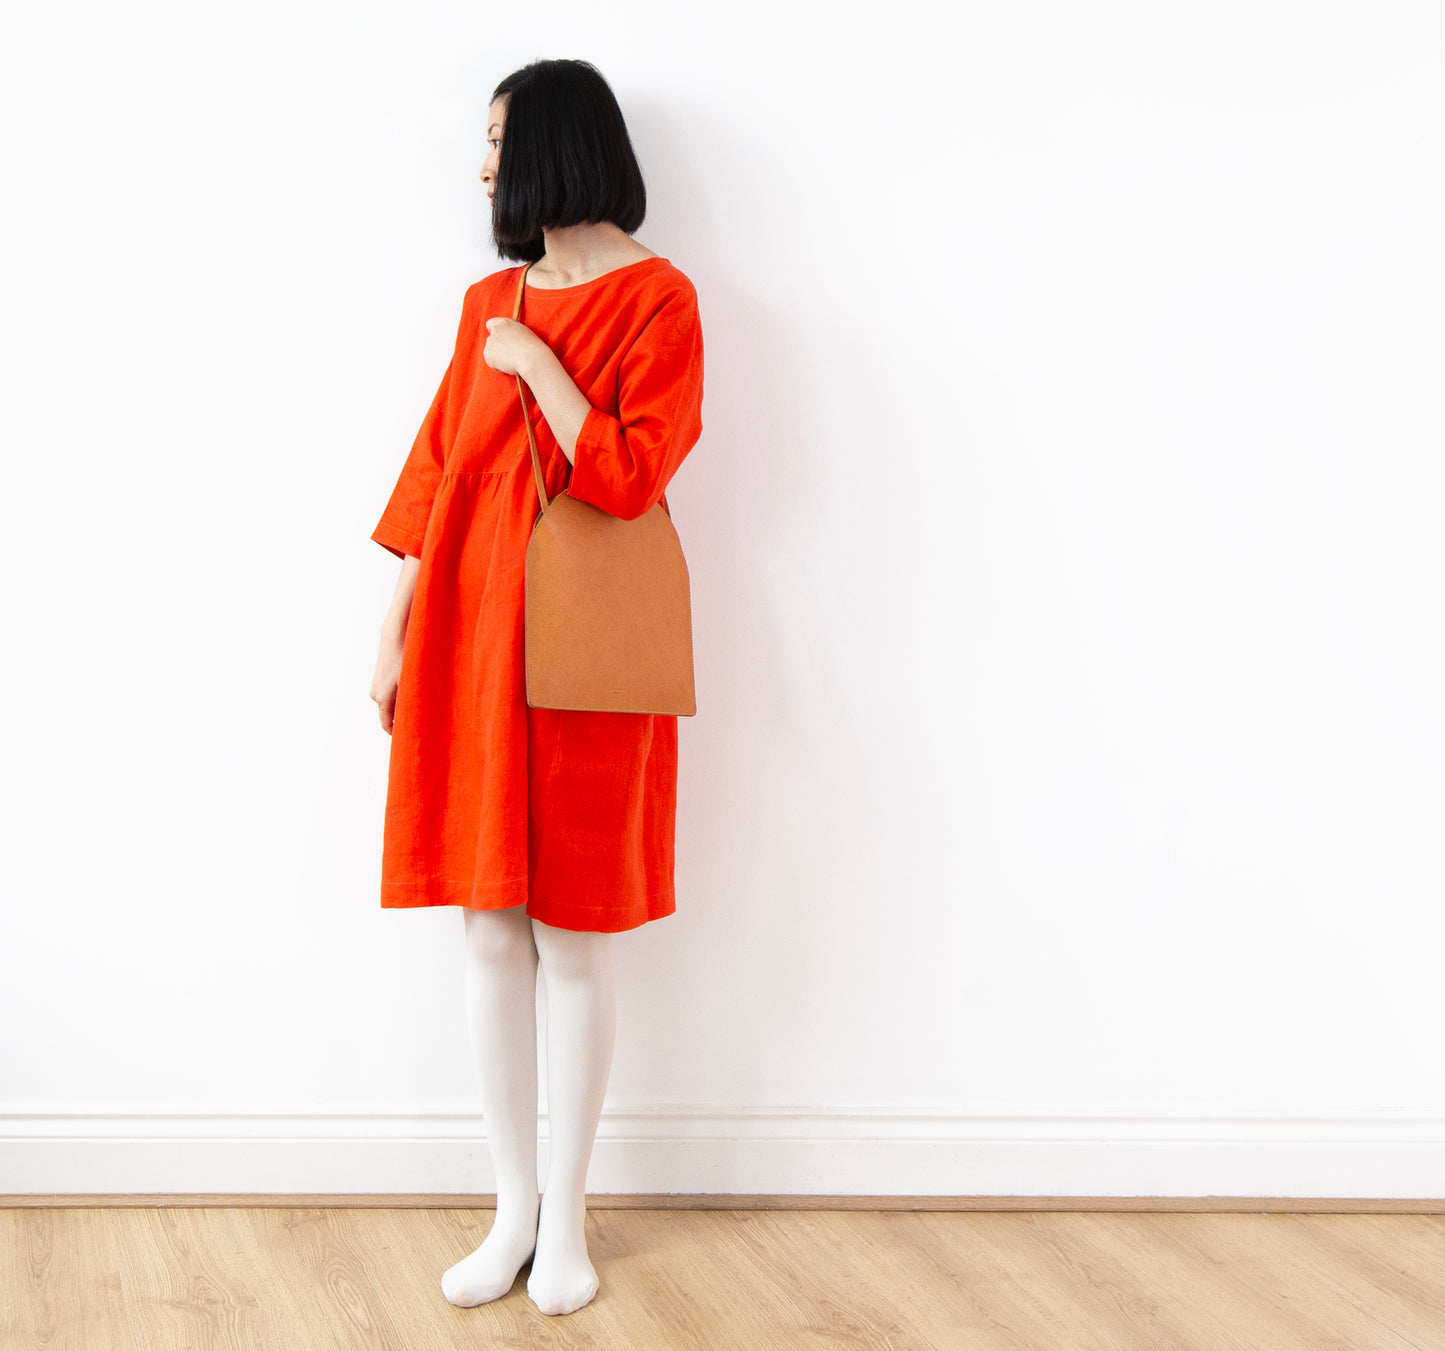 Vibrant orange red linen dress